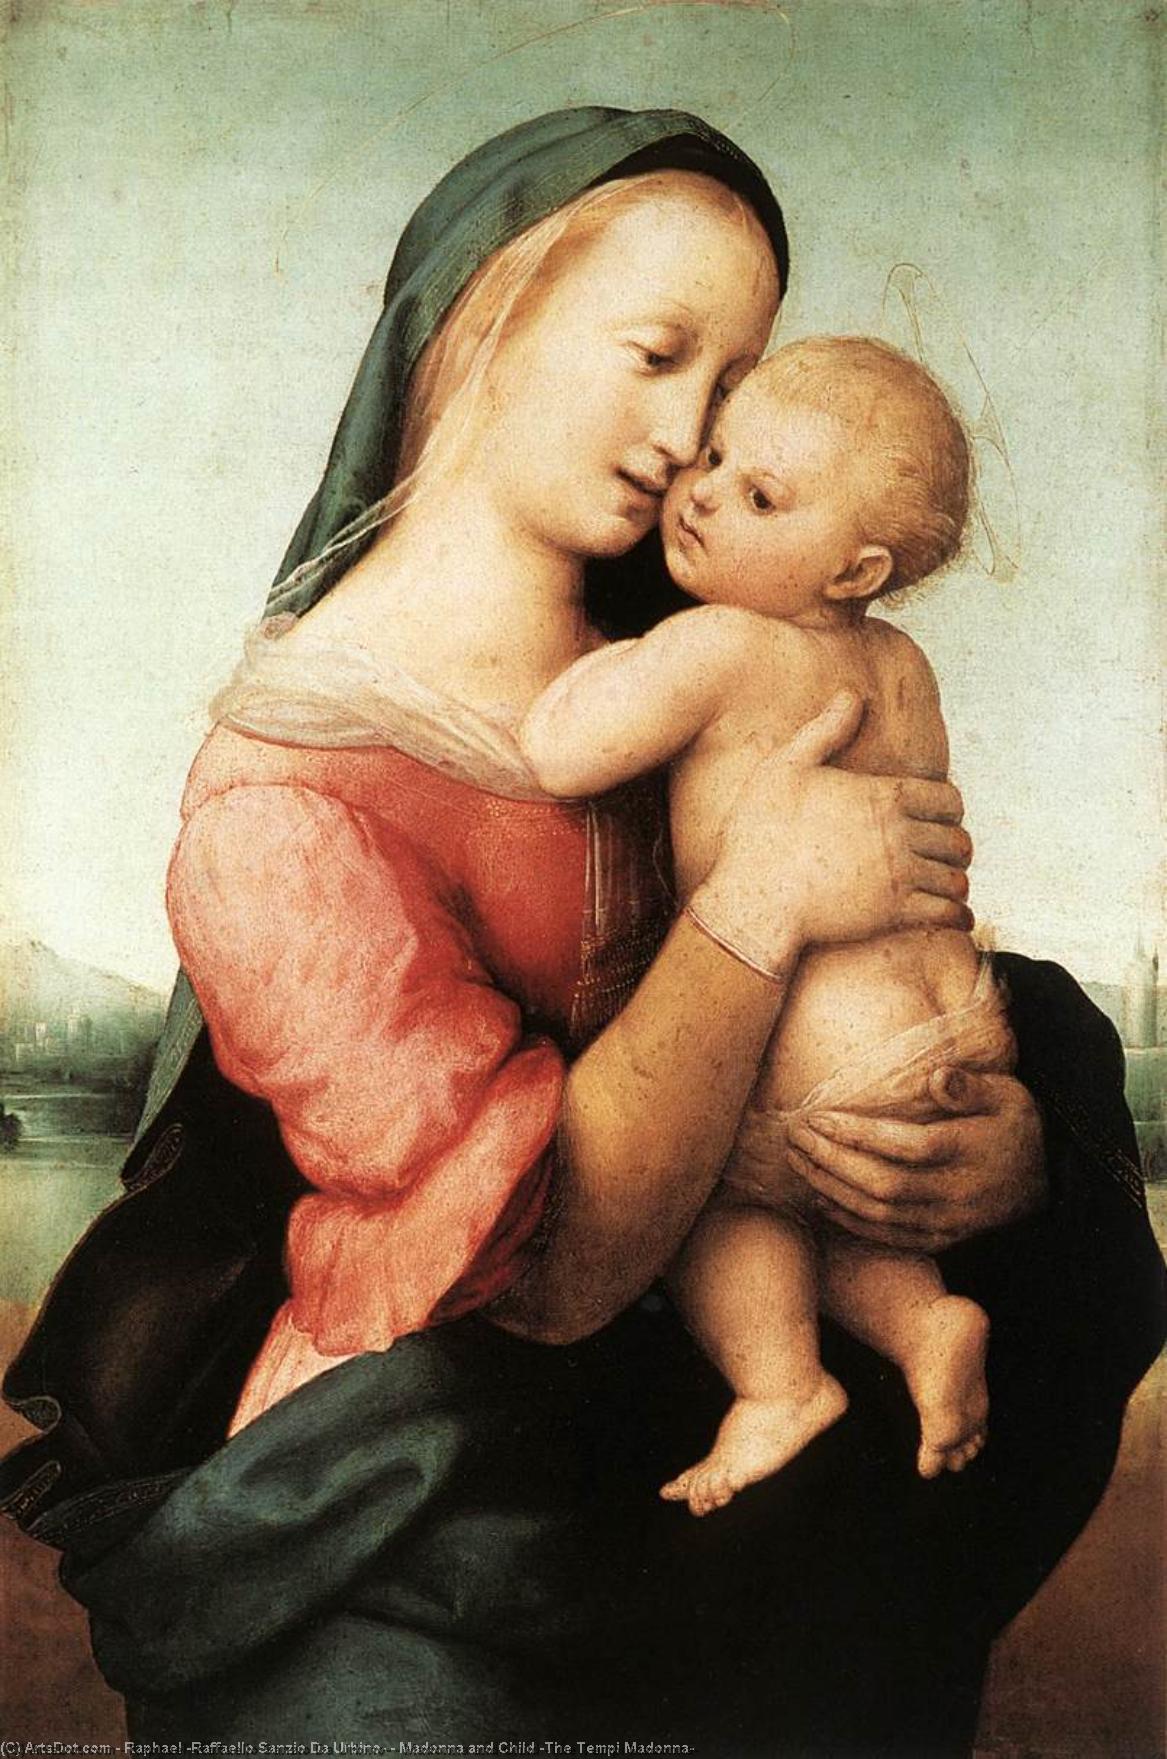 Compra Riproduzioni D'arte Del Museo Madonna col Bambino (La Madonna dei Tempi), 1508 di Raphael (Raffaello Sanzio Da Urbino) (1483-1520, Italy) | ArtsDot.com